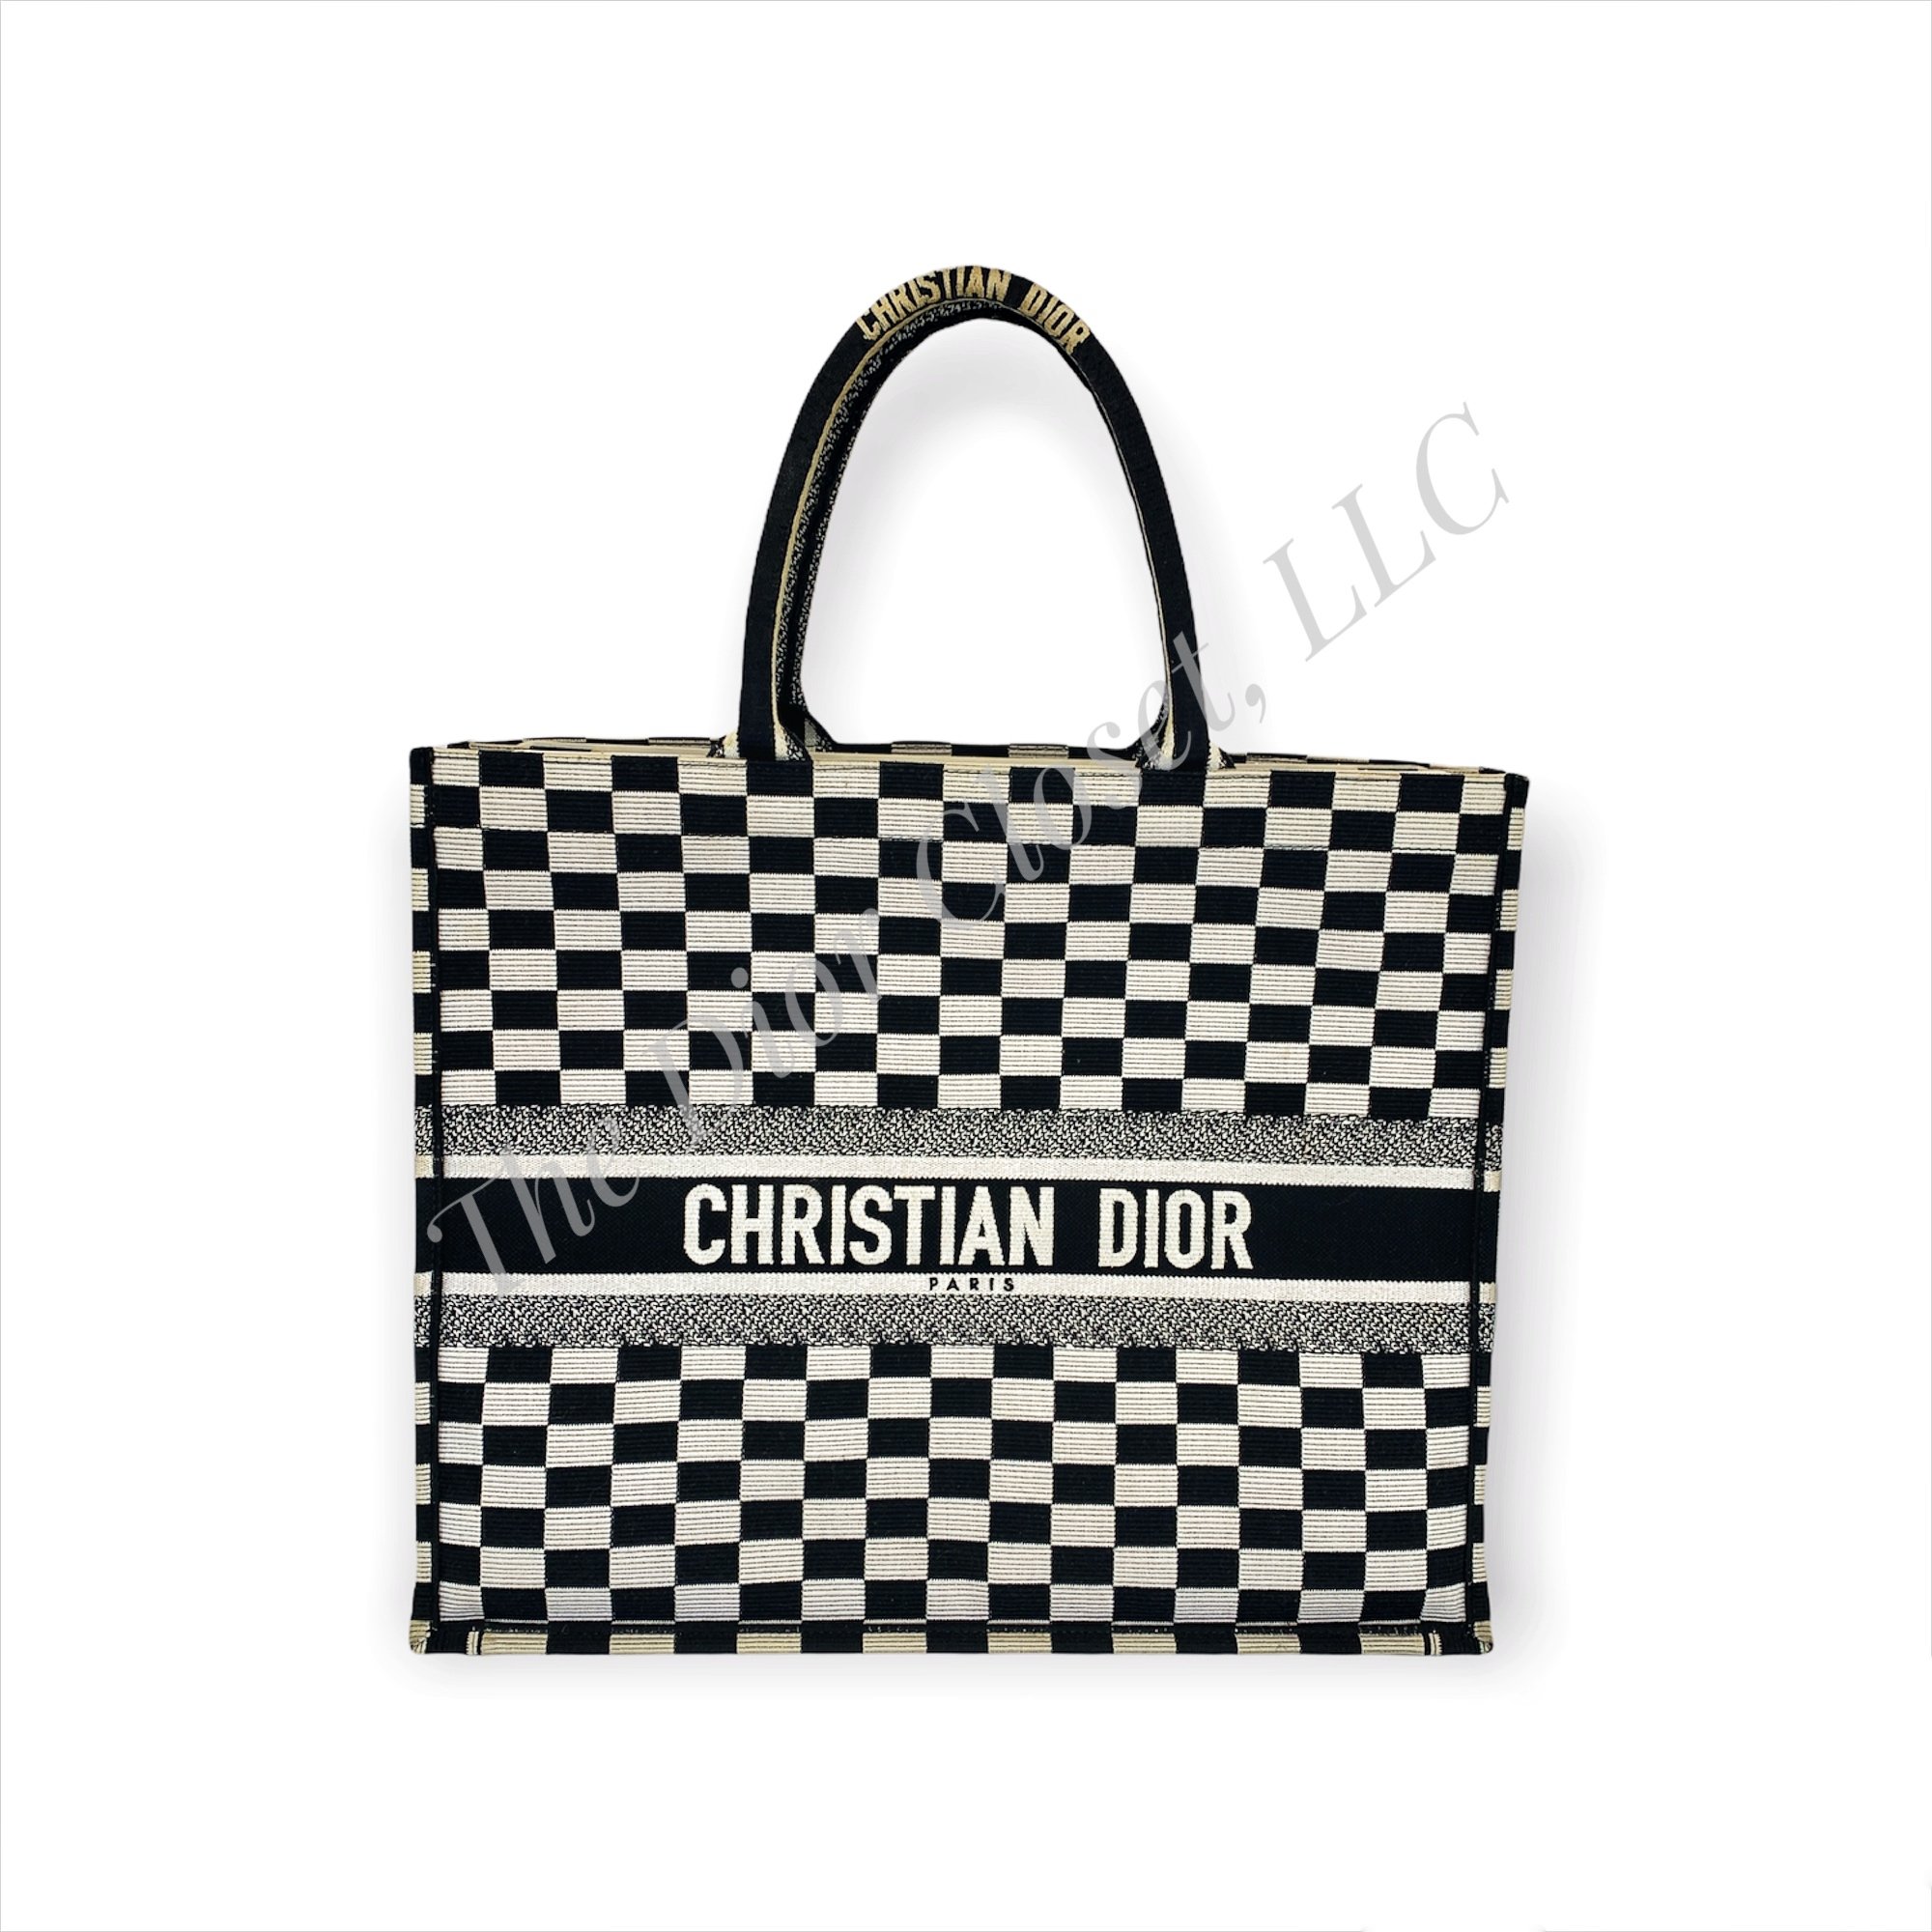 Dior Book Tote: Black & White Checkered, Large, 2018